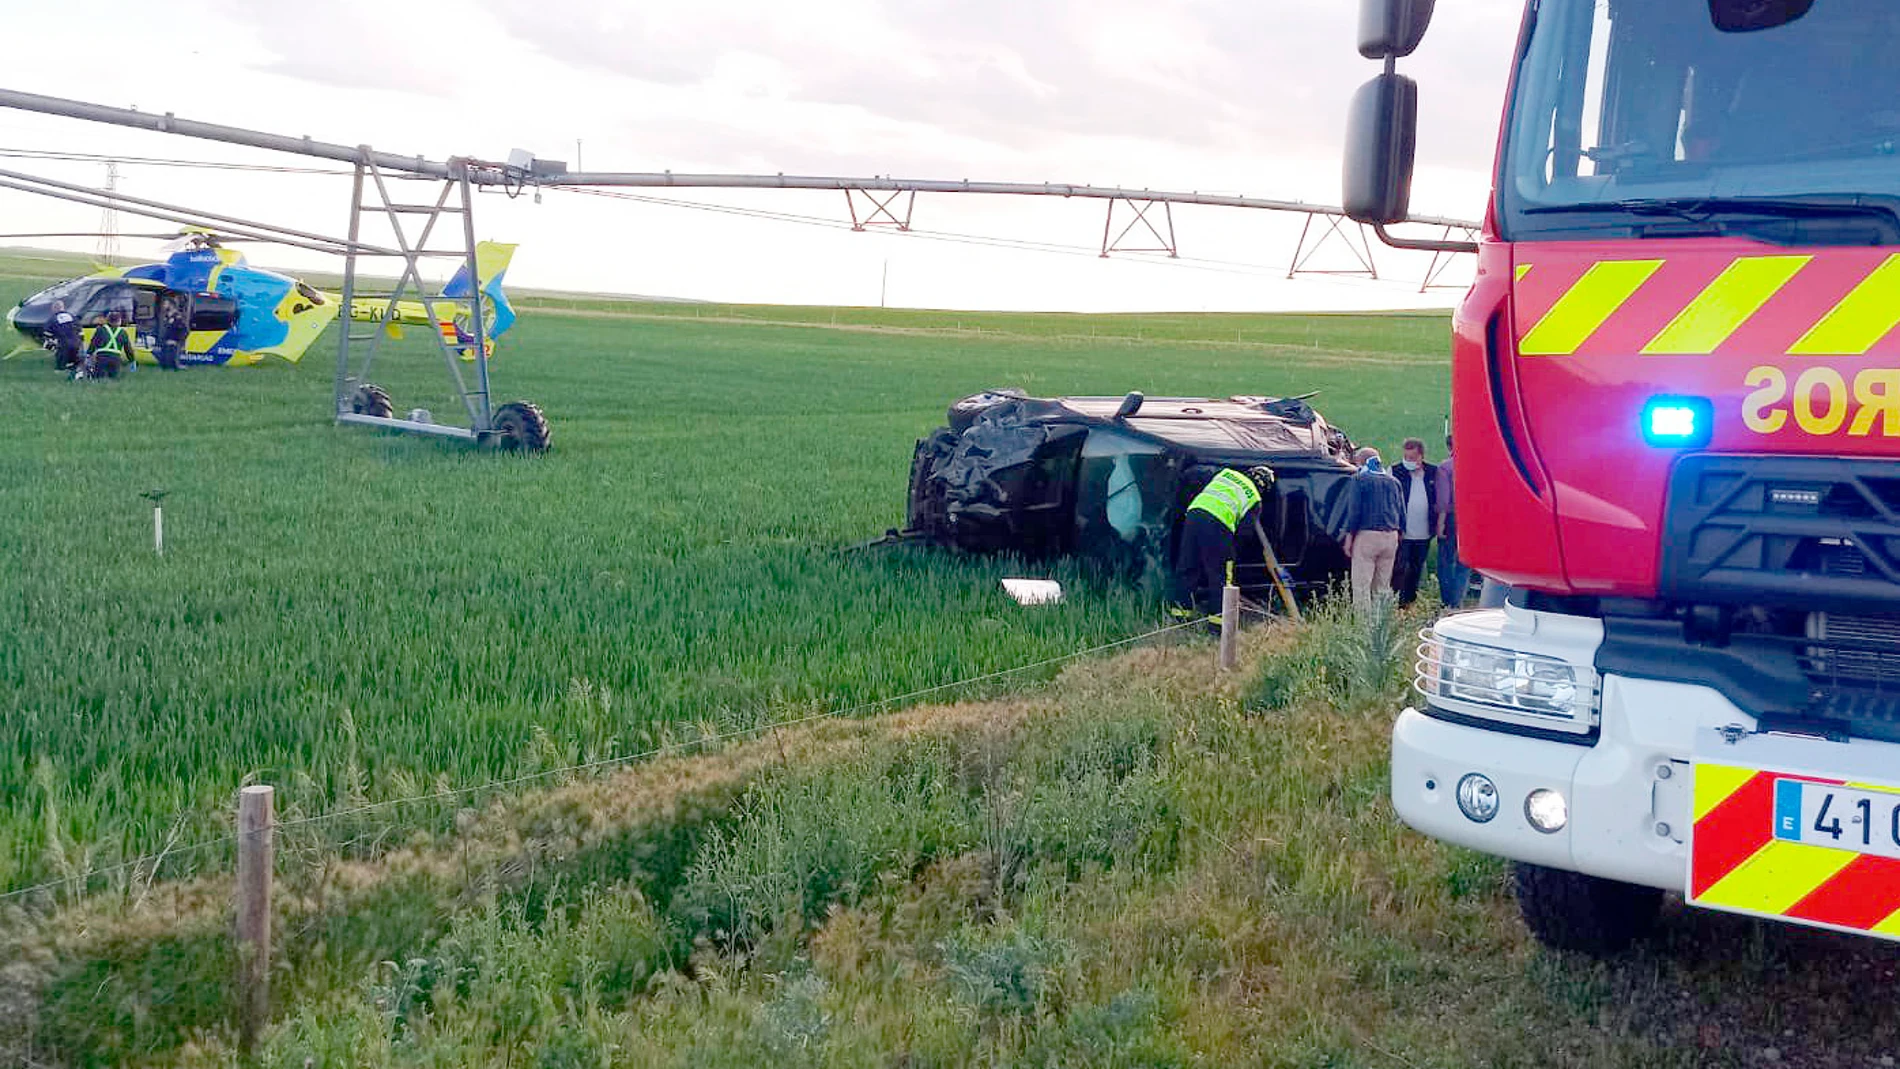 Accidente de tráfico al volcar un turismo en la A-11, en el que cinco personas resultaron heridas, en Villalar de los Comuneros (Valladolid)